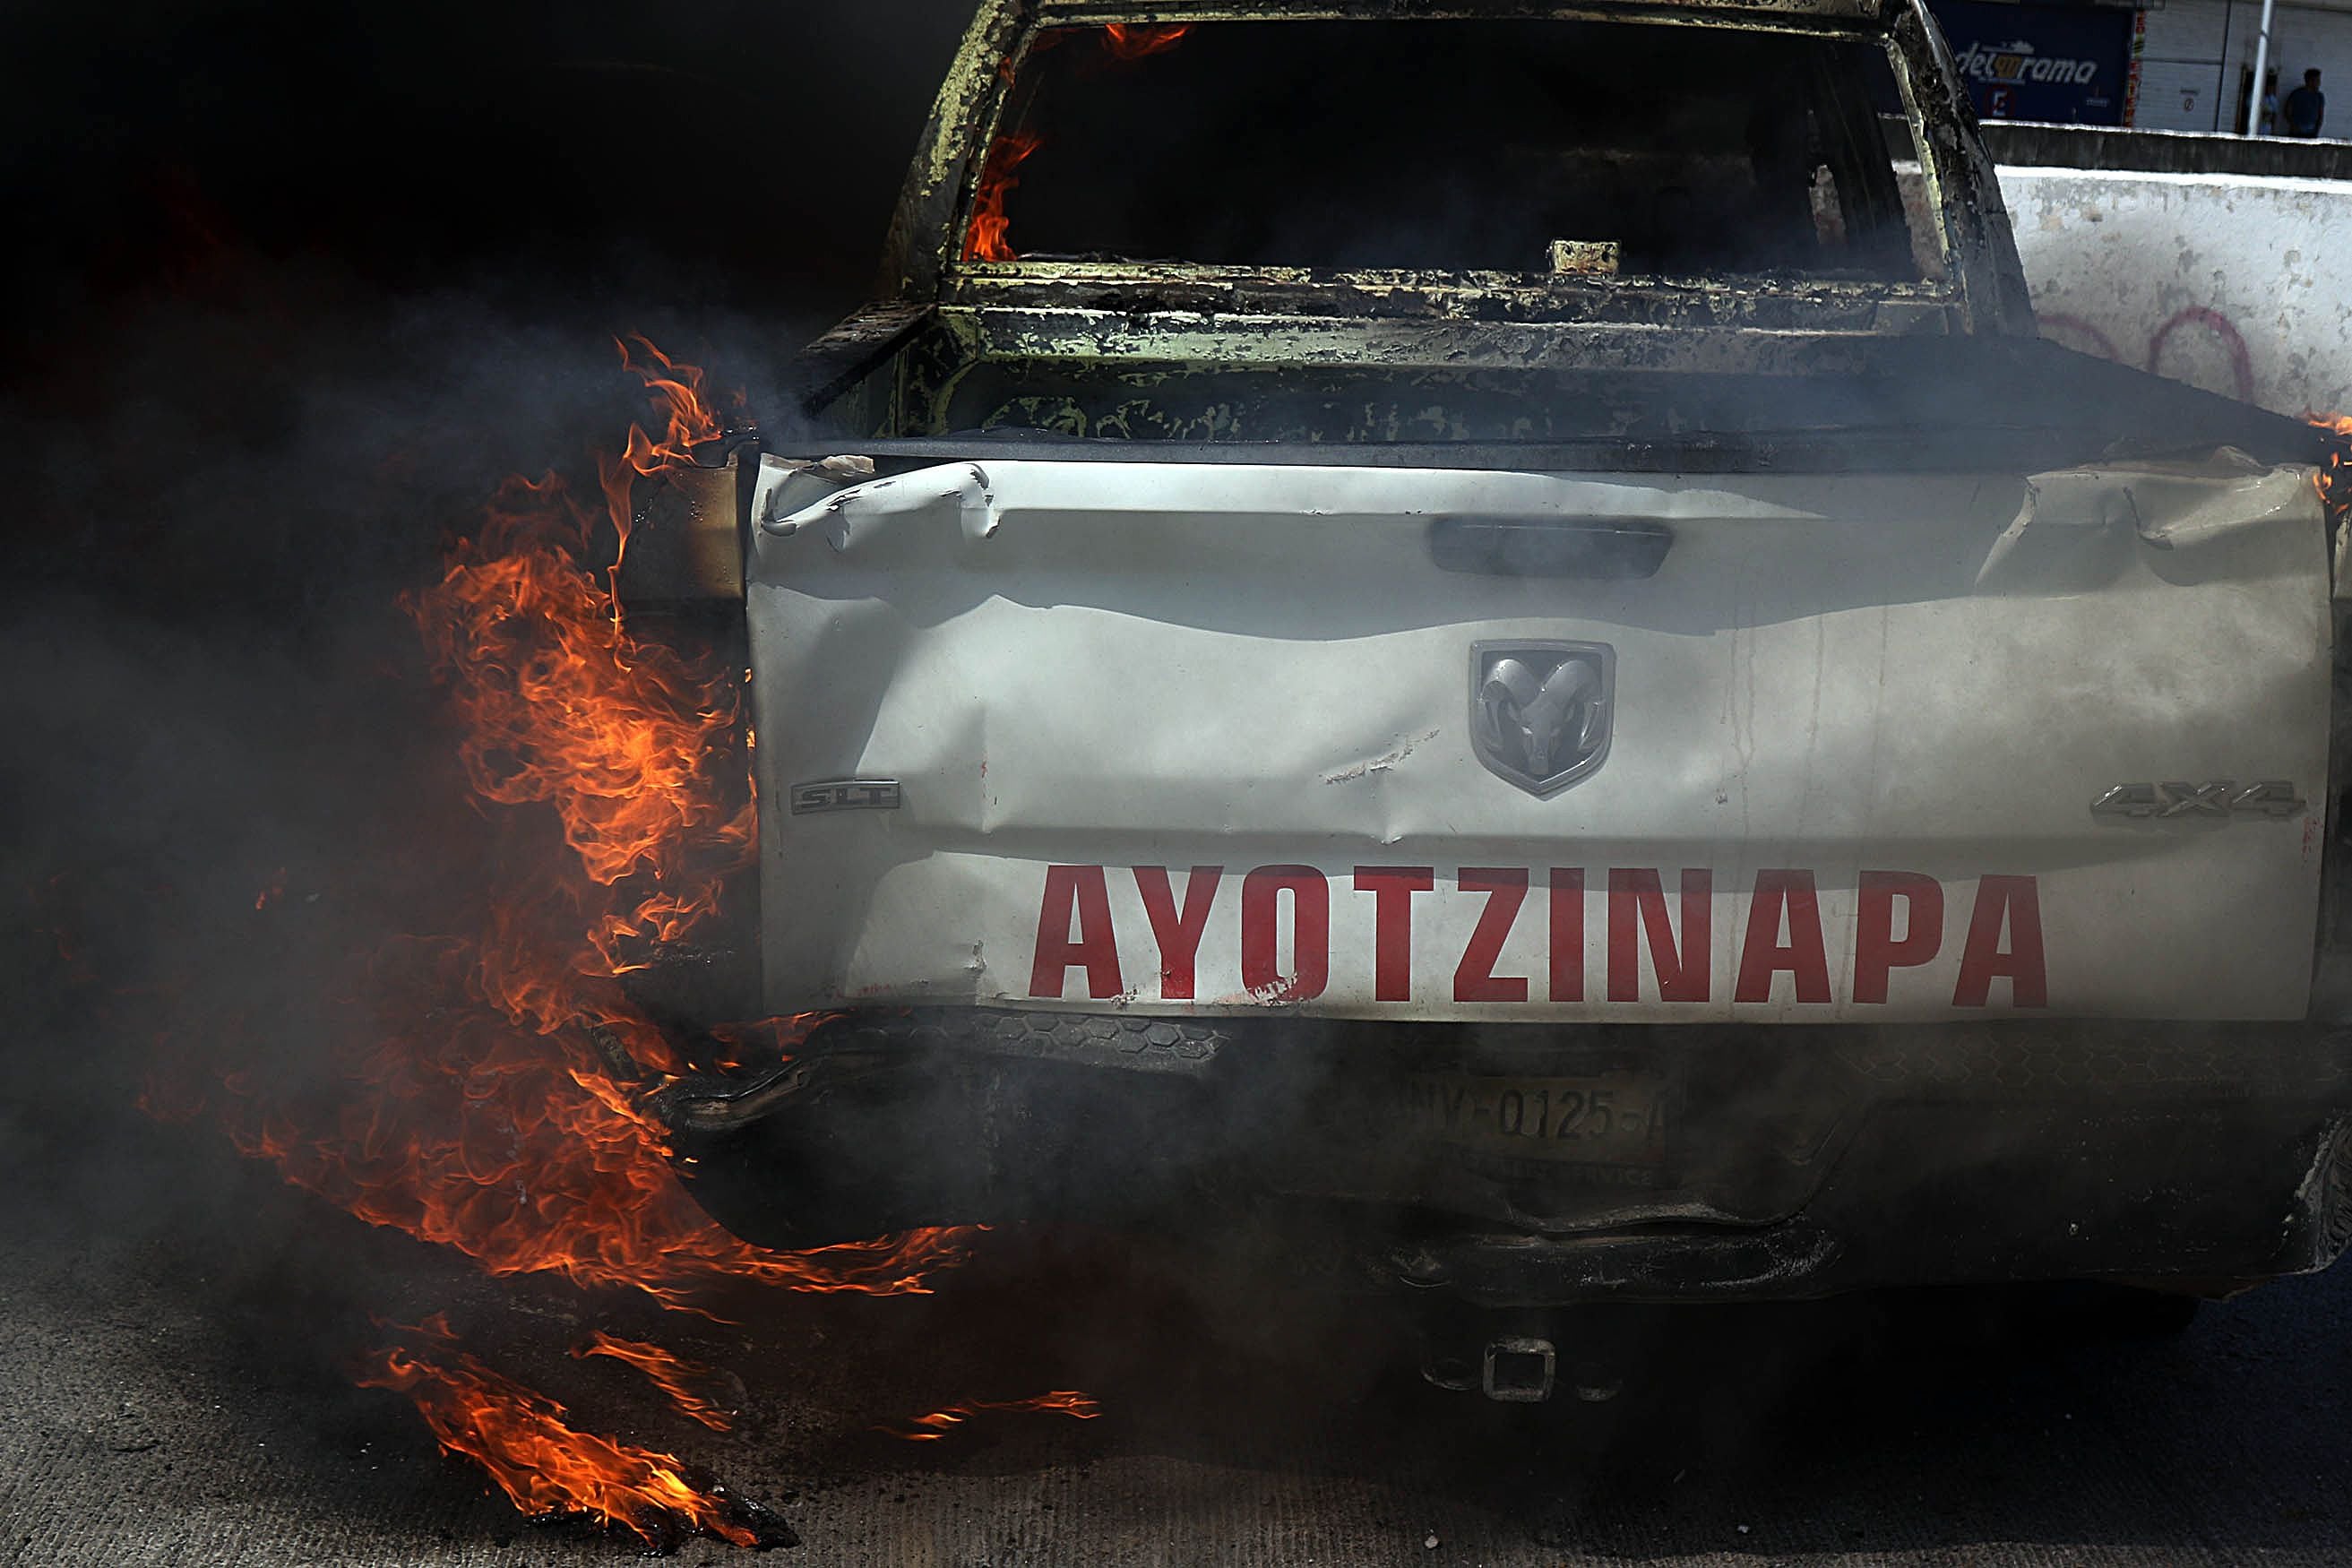 Asesinato normalista Ayotzinapa: Dan prisión preventiva a policías vinculados al crimen